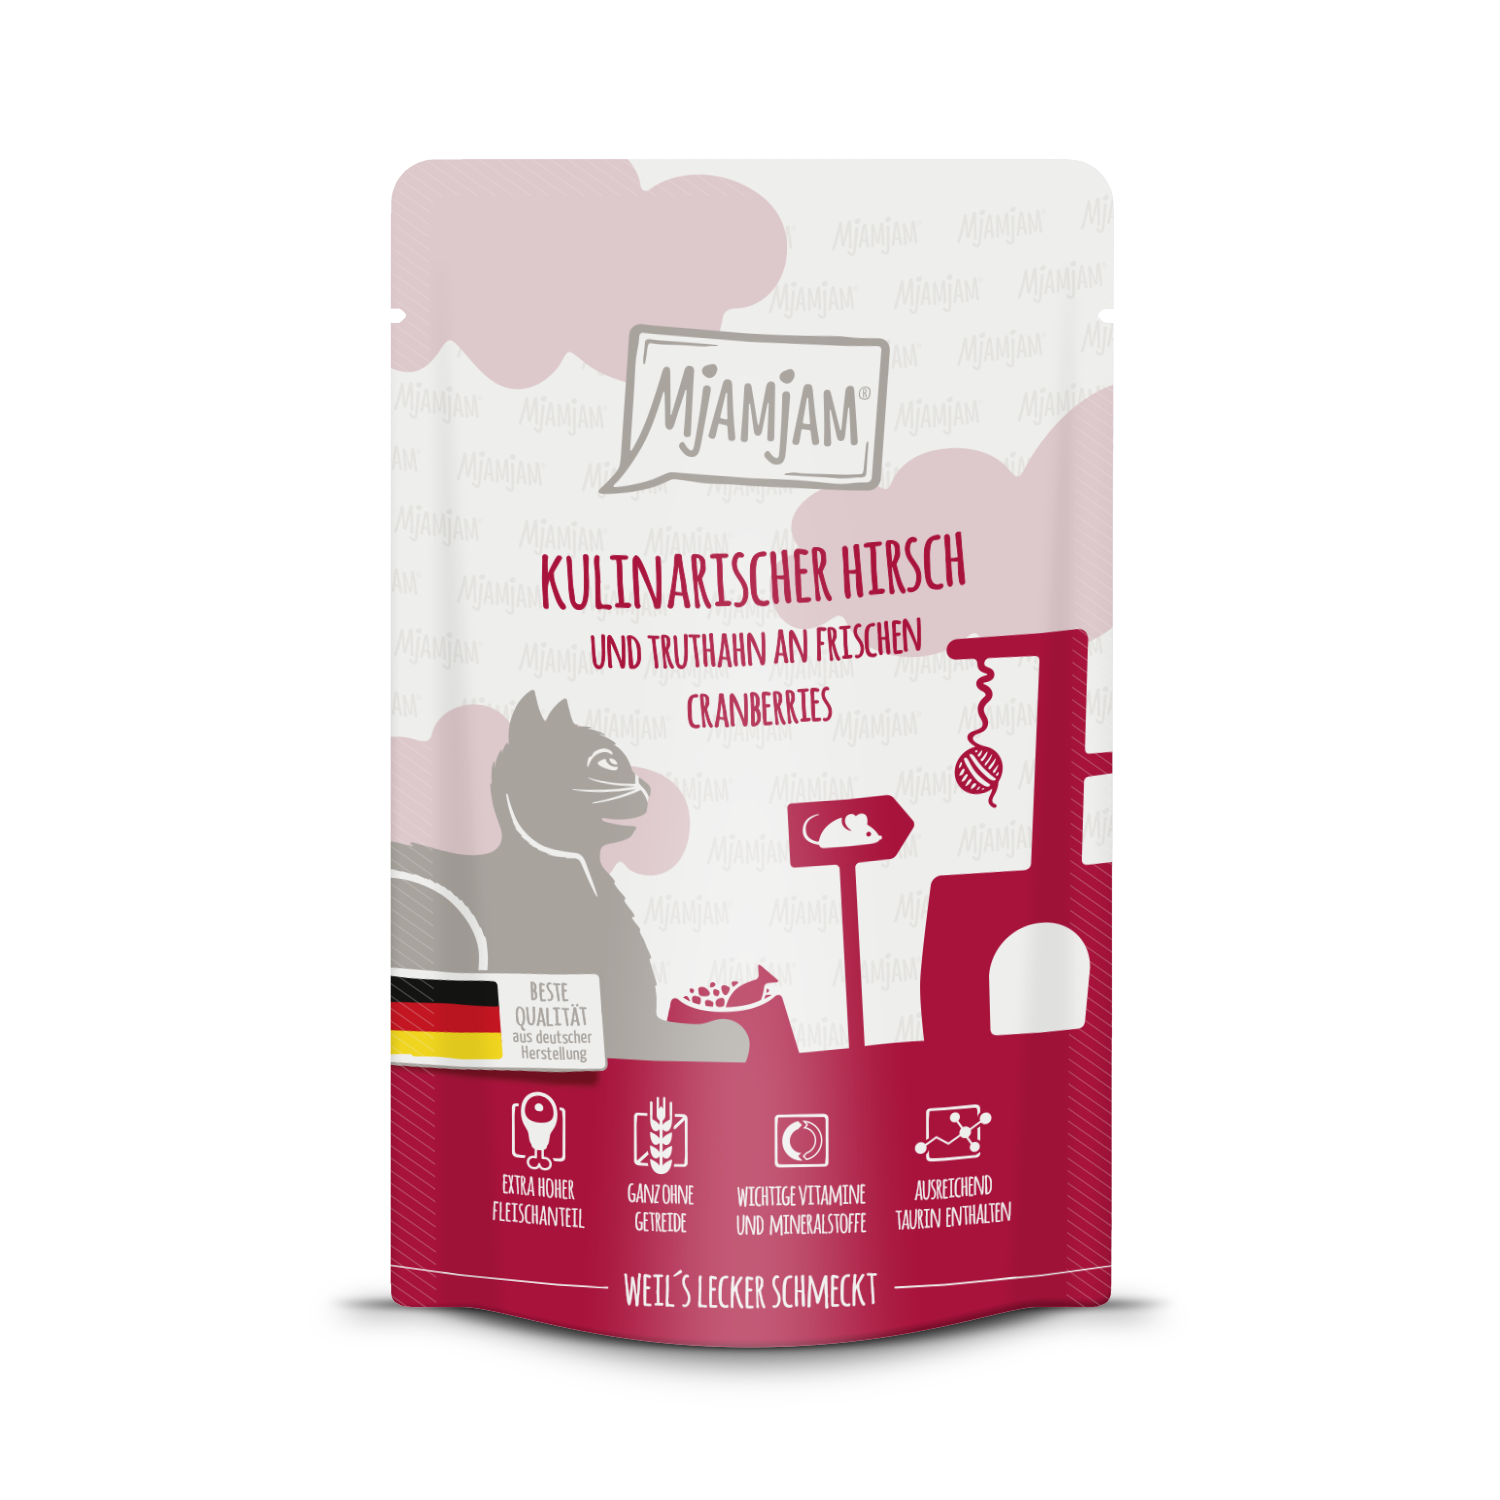 MjAMjAM - Katze - kulinarischer Hirsch und Truthahn an frischen Cranberries